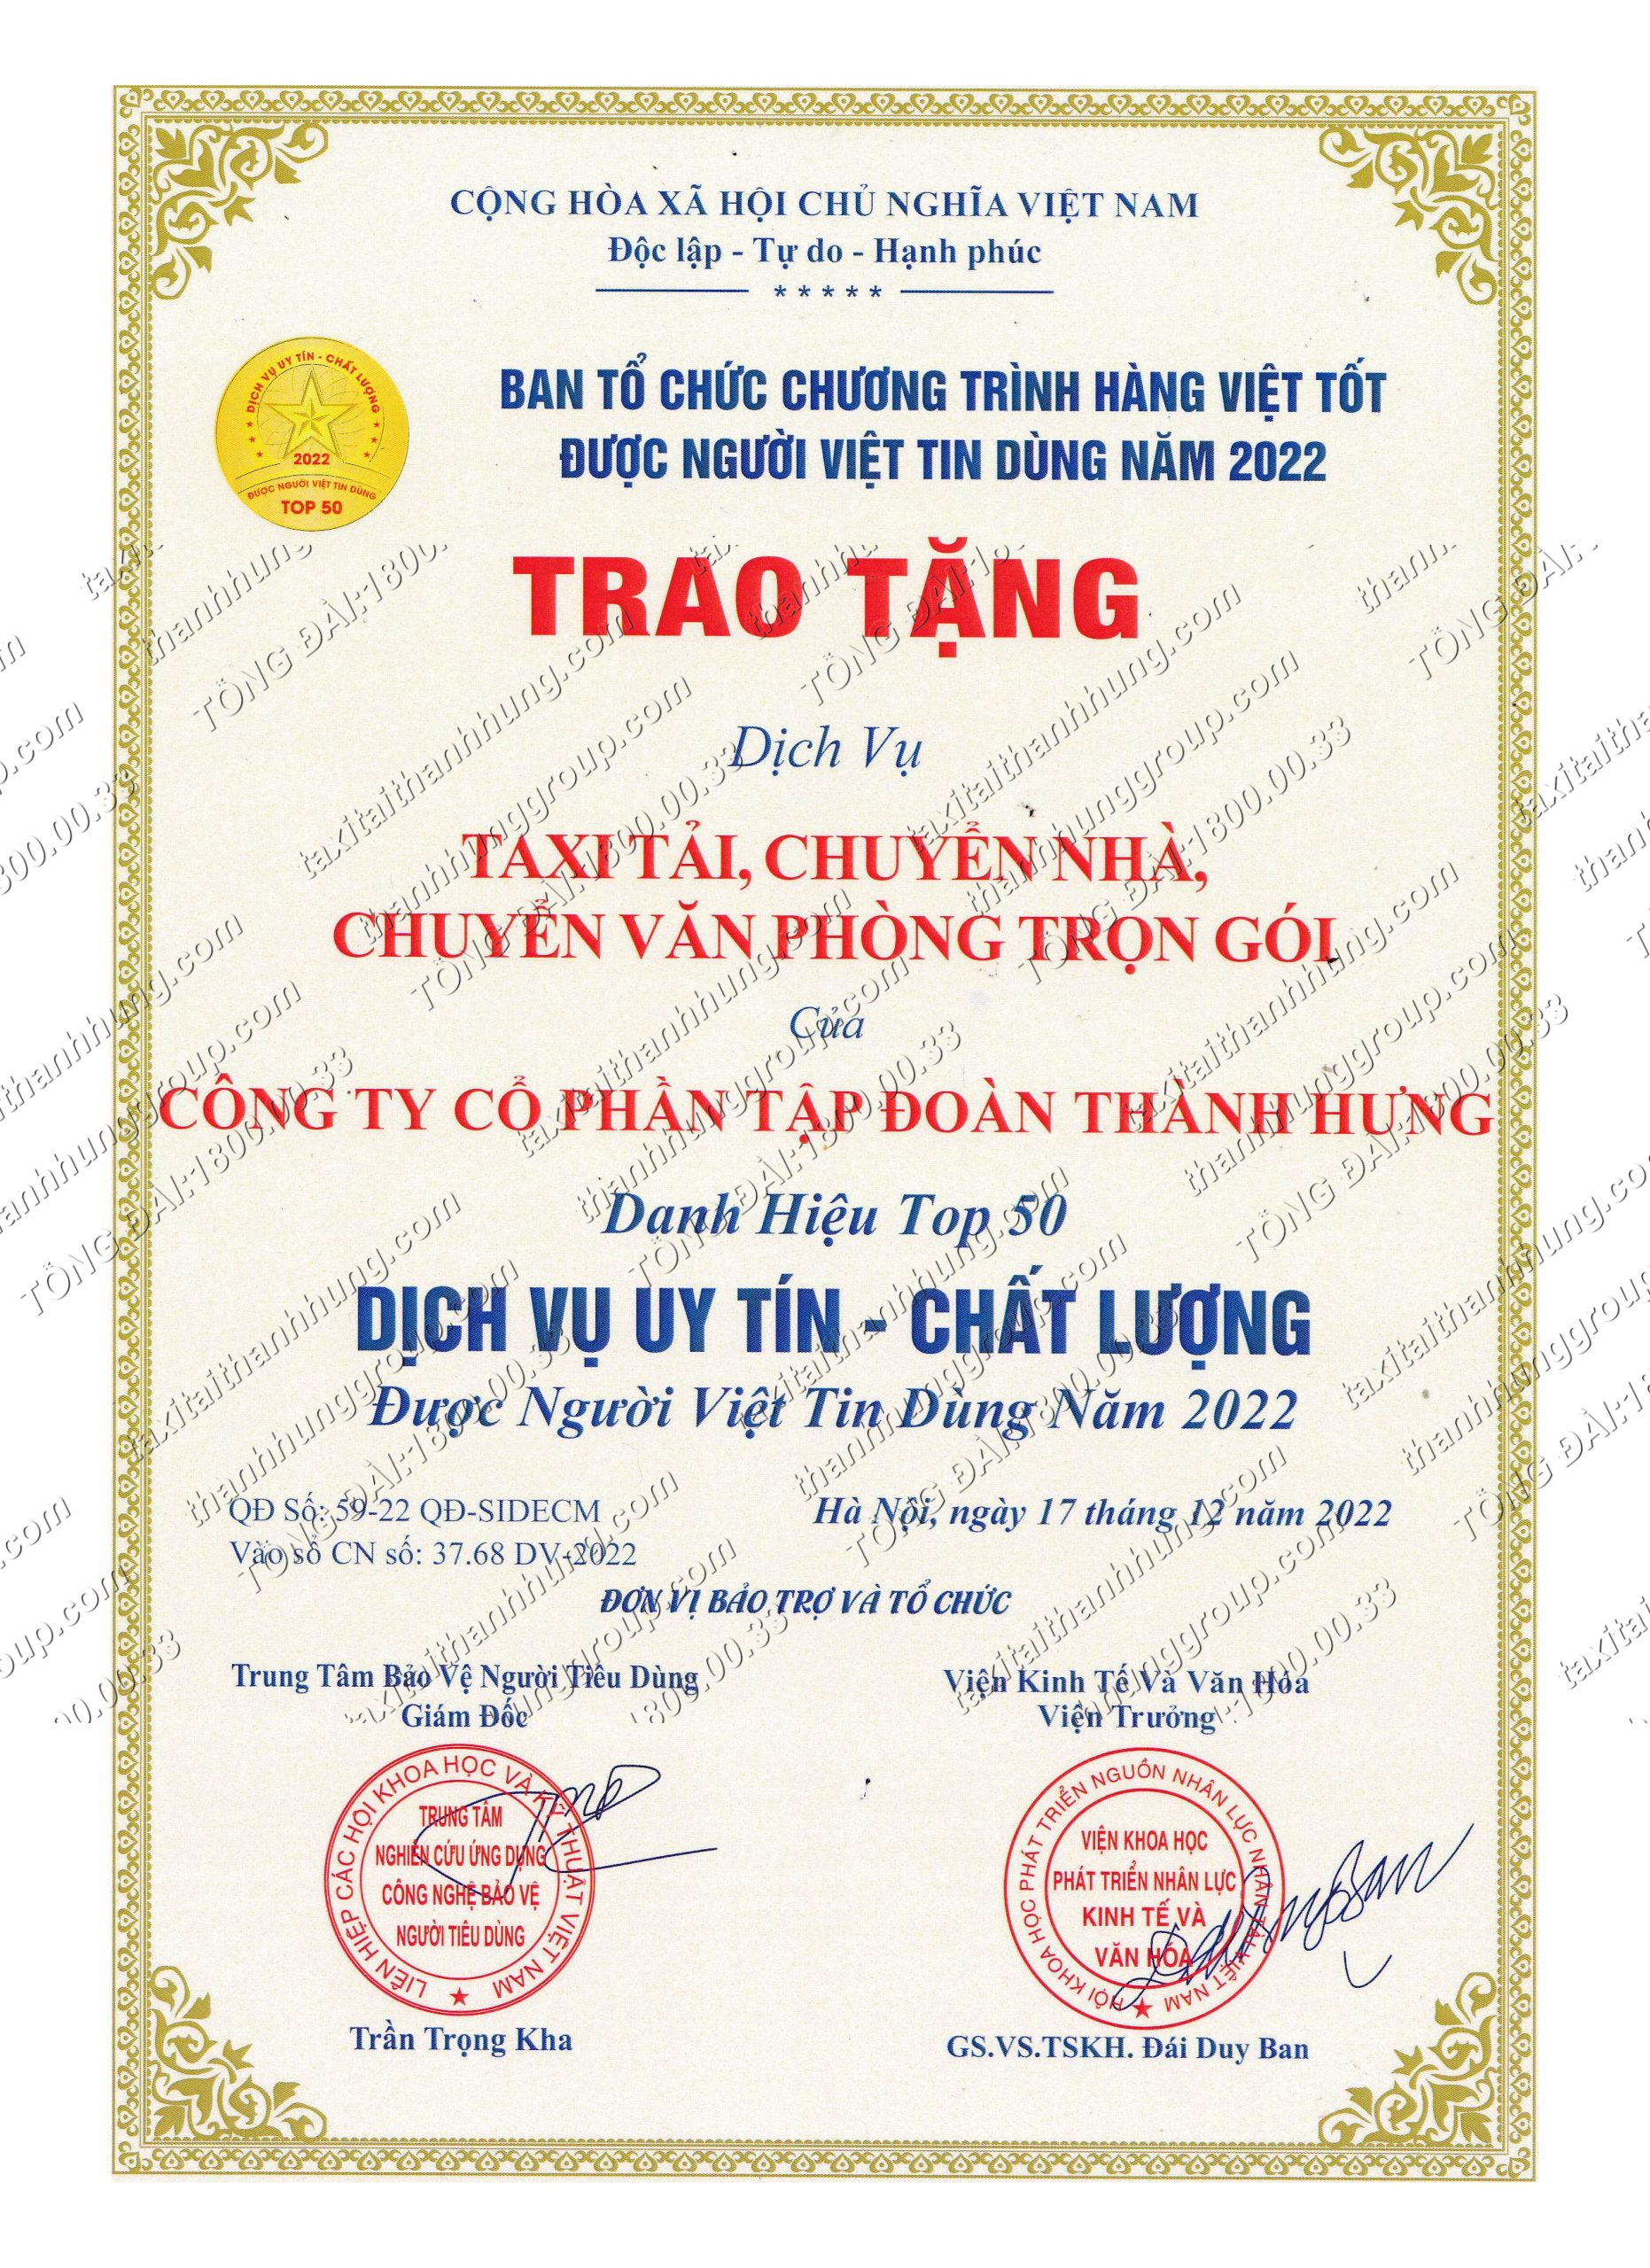 https://taxitaithanhhung.com/taxi-tai-thanh-hung-dat-top-50-thuong-hieu-noi-tieng-dat-viet-va-top-50-dich-vu-uy-tin-chat-luong-duoc-nguoi-viet-tin-dung-nam-2022/